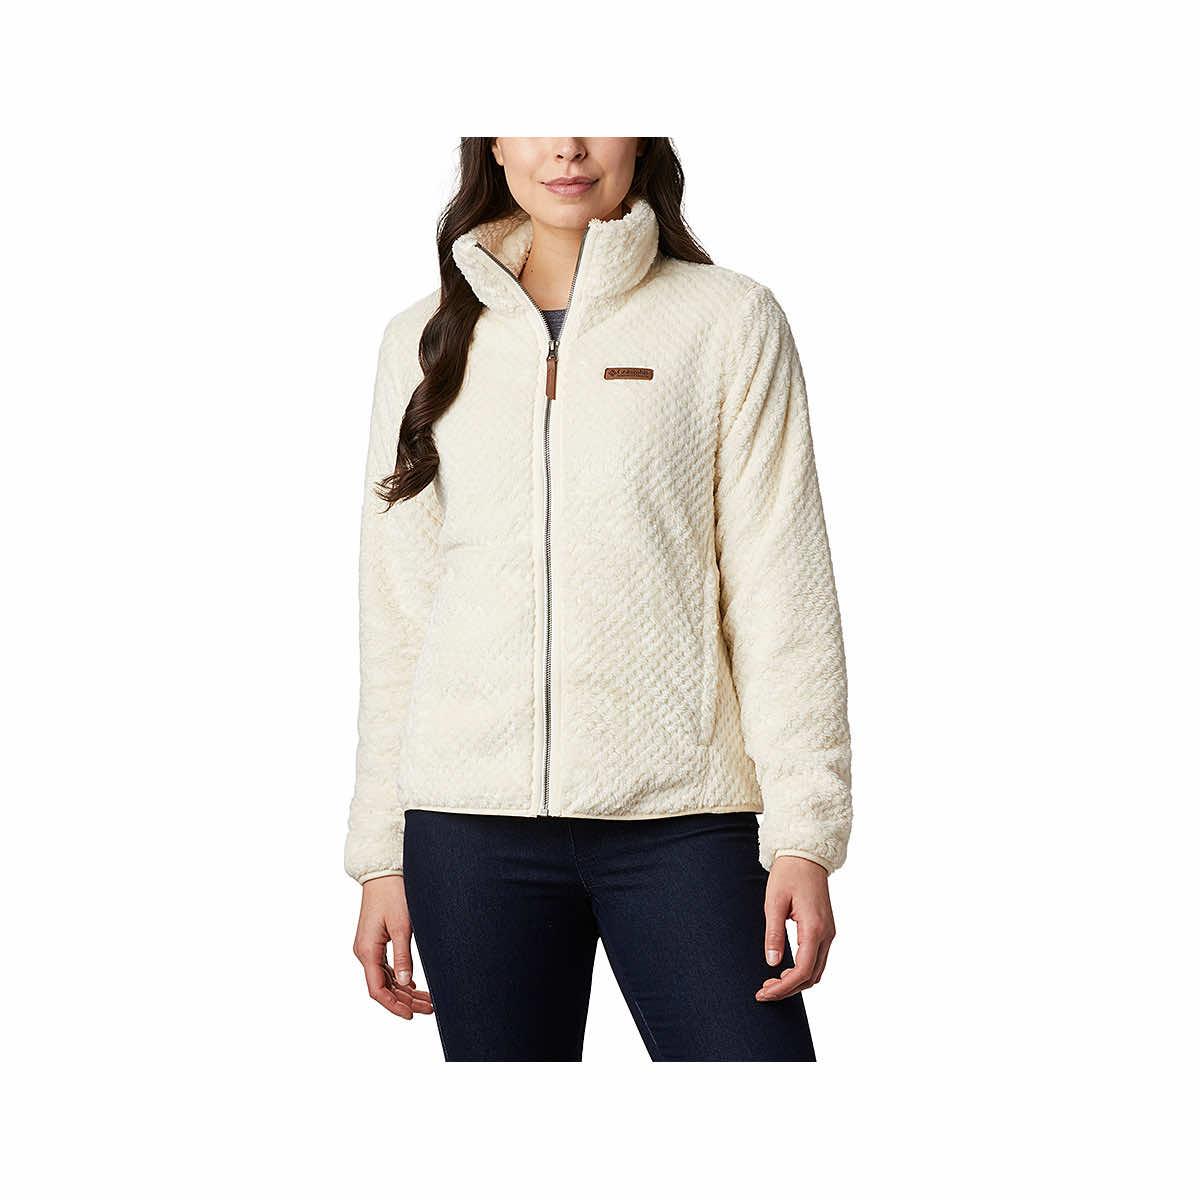  Women's Fire Side Ii Sherpa Fleece Full Zip Jacket